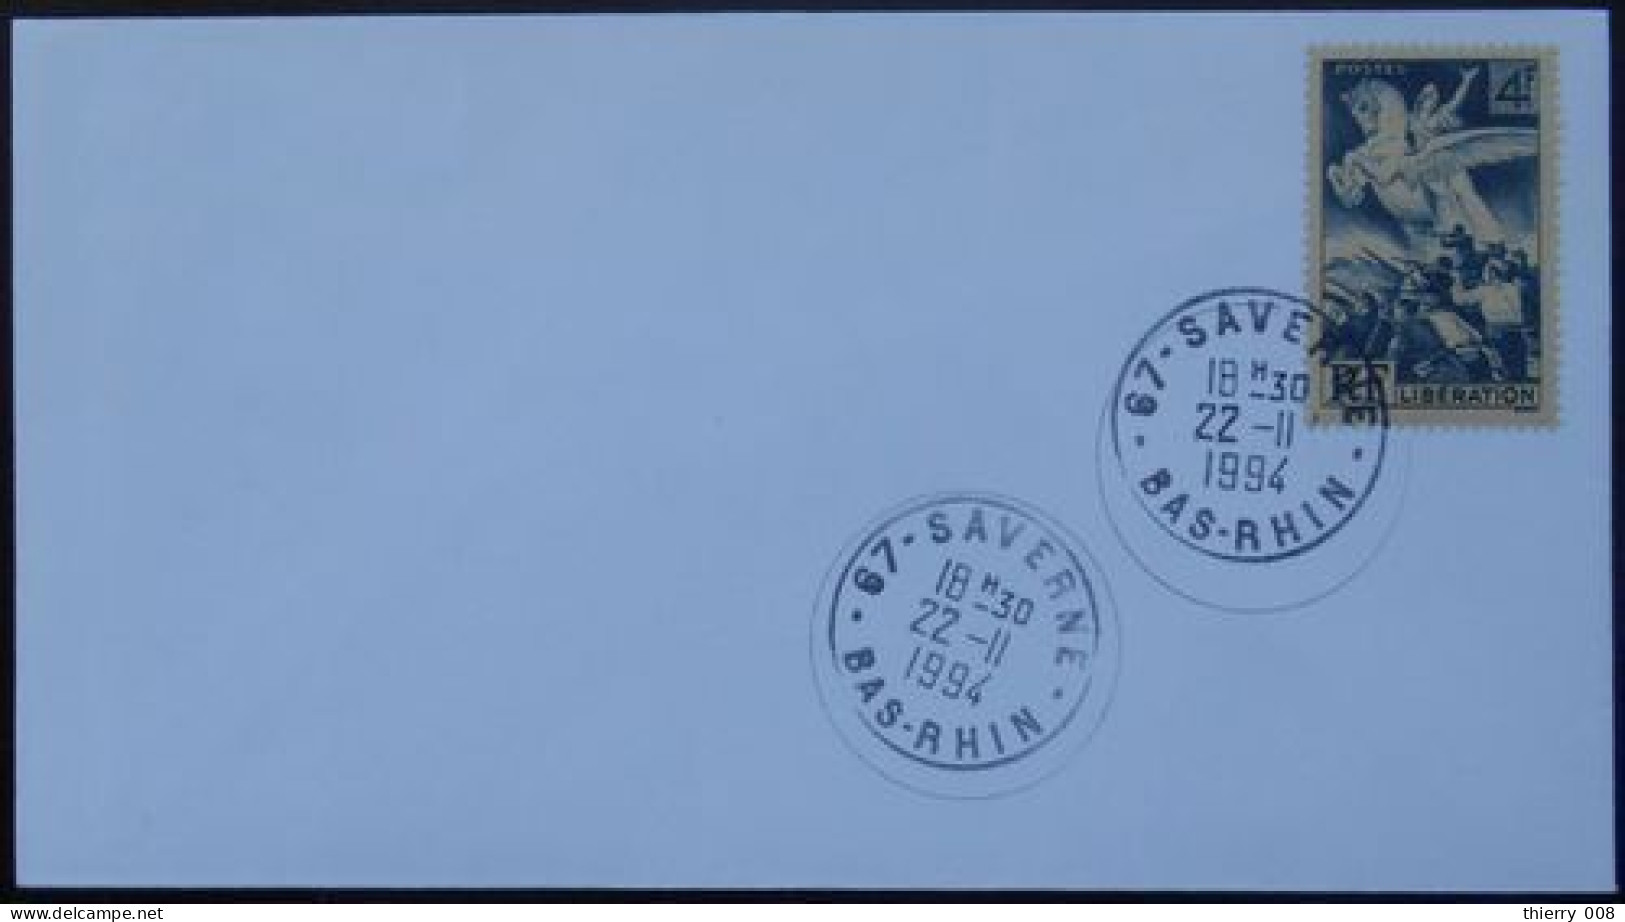 S009 Cachet Temporaire Saverne 67 Bas Rhin Anniversaire De La Libération 22 Novembre 1994 - Manual Postmarks